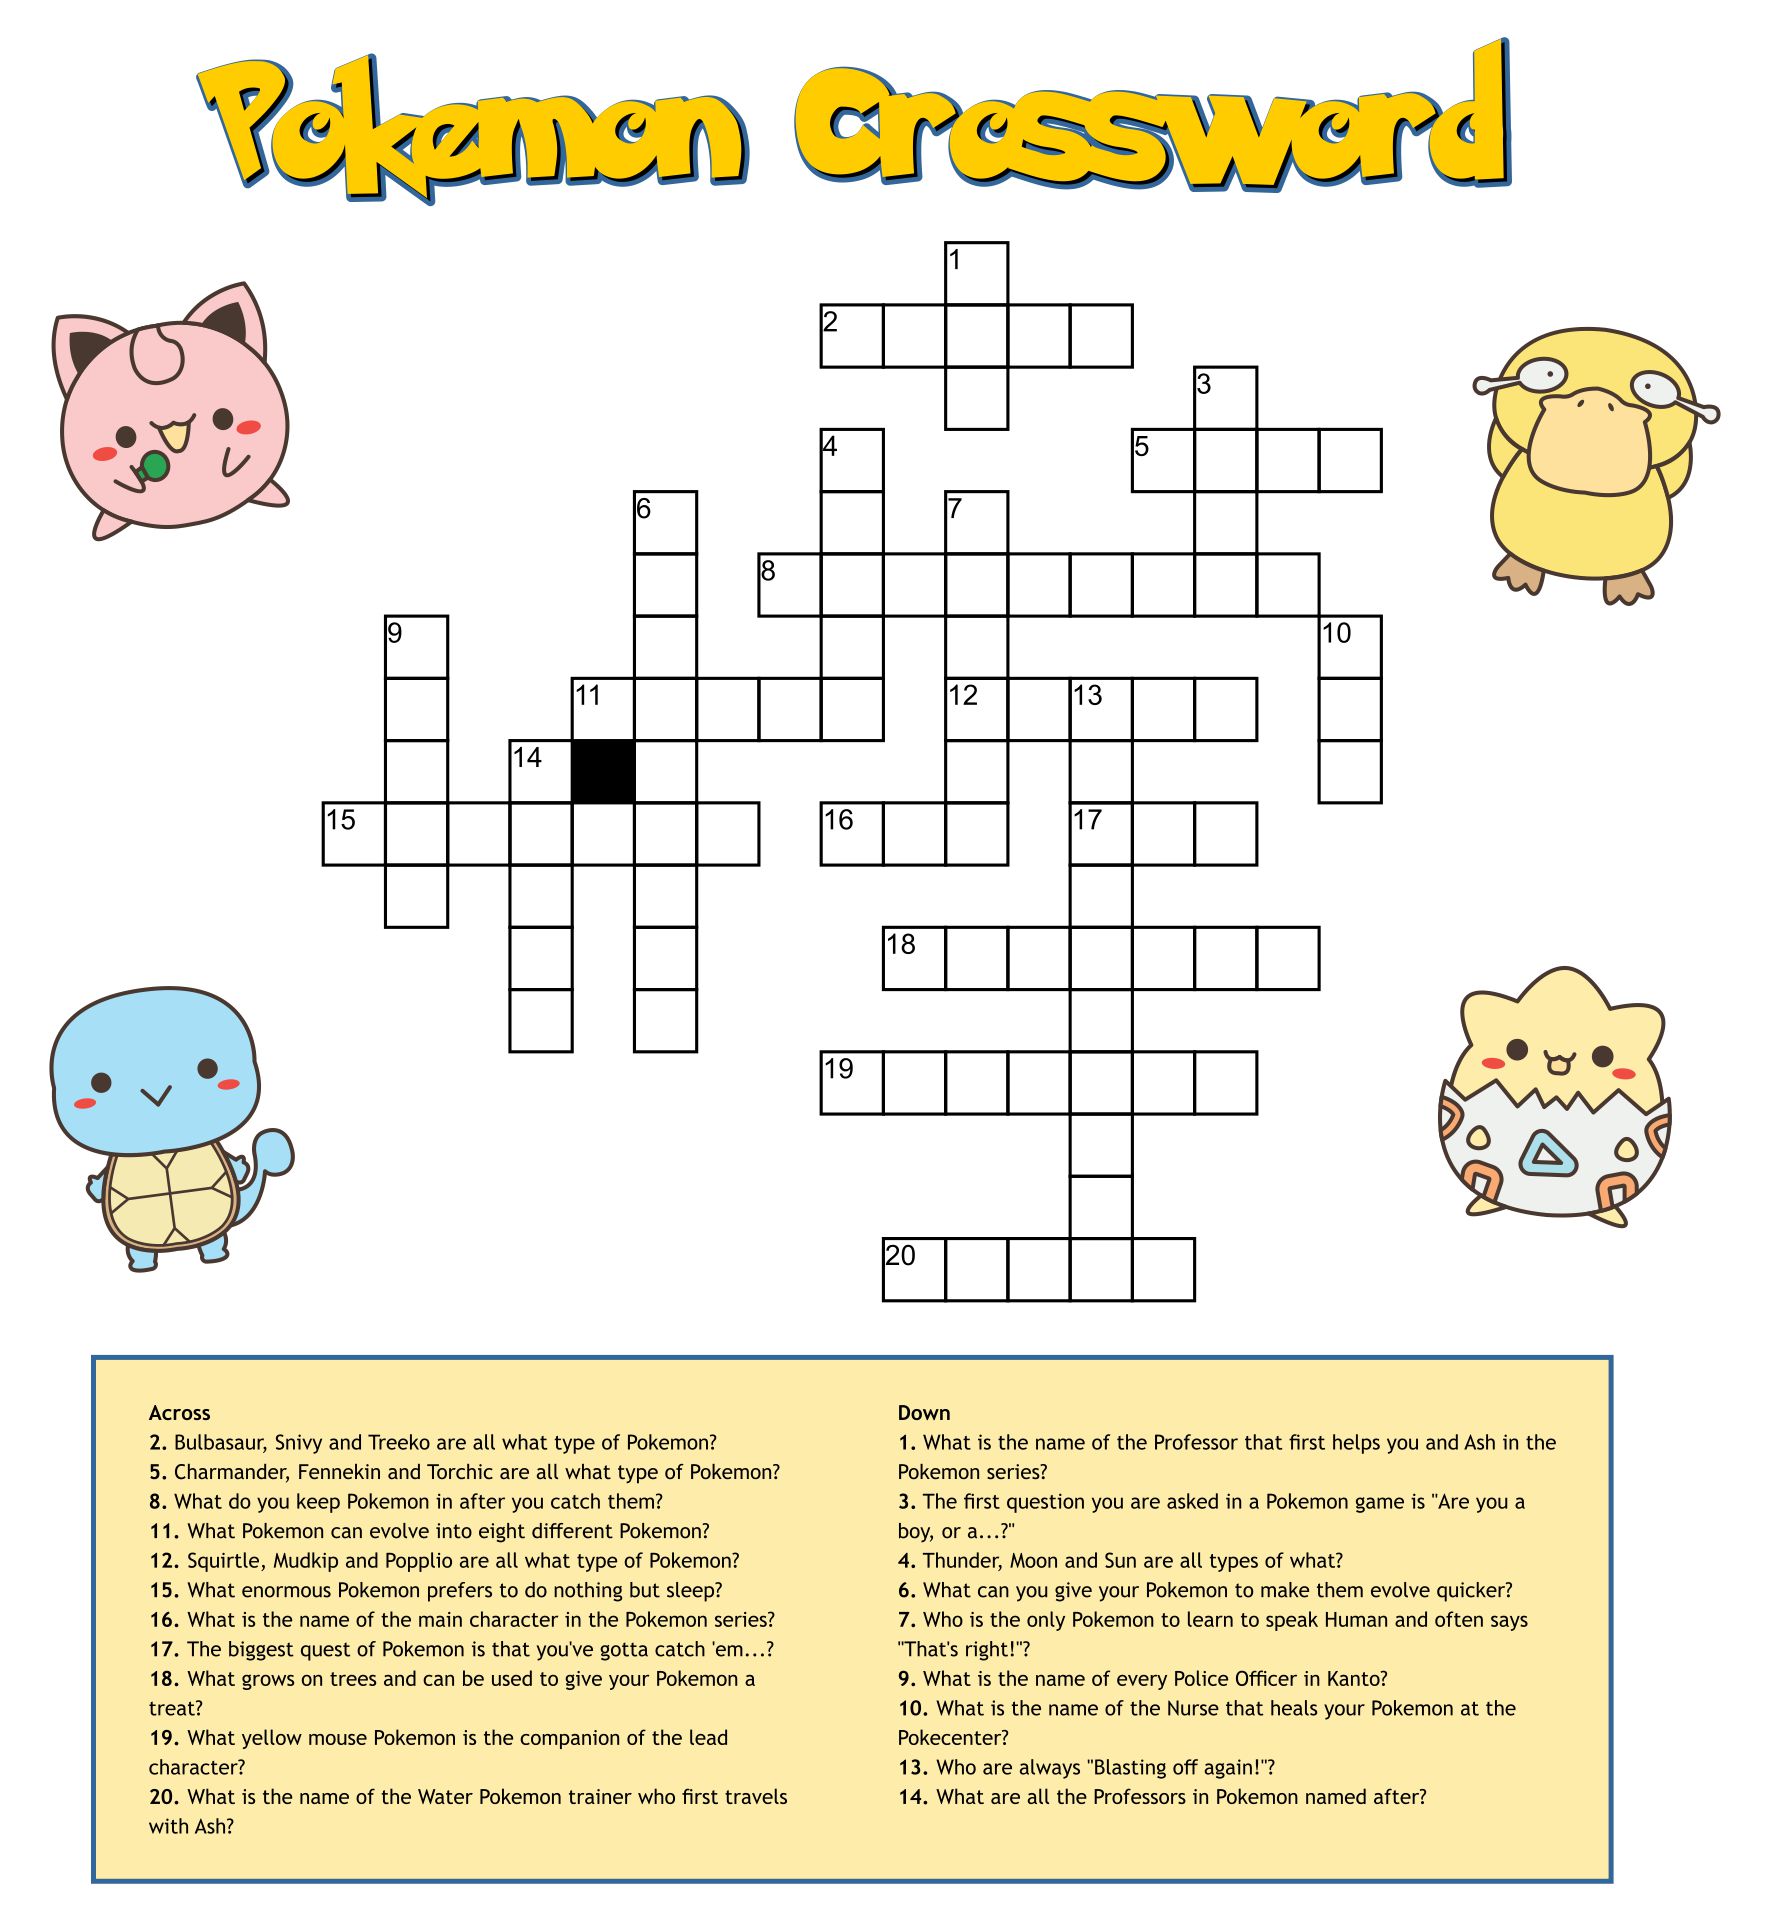 printable-blank-crossword-grid-printable-crossword-puzzles-word-gambaran